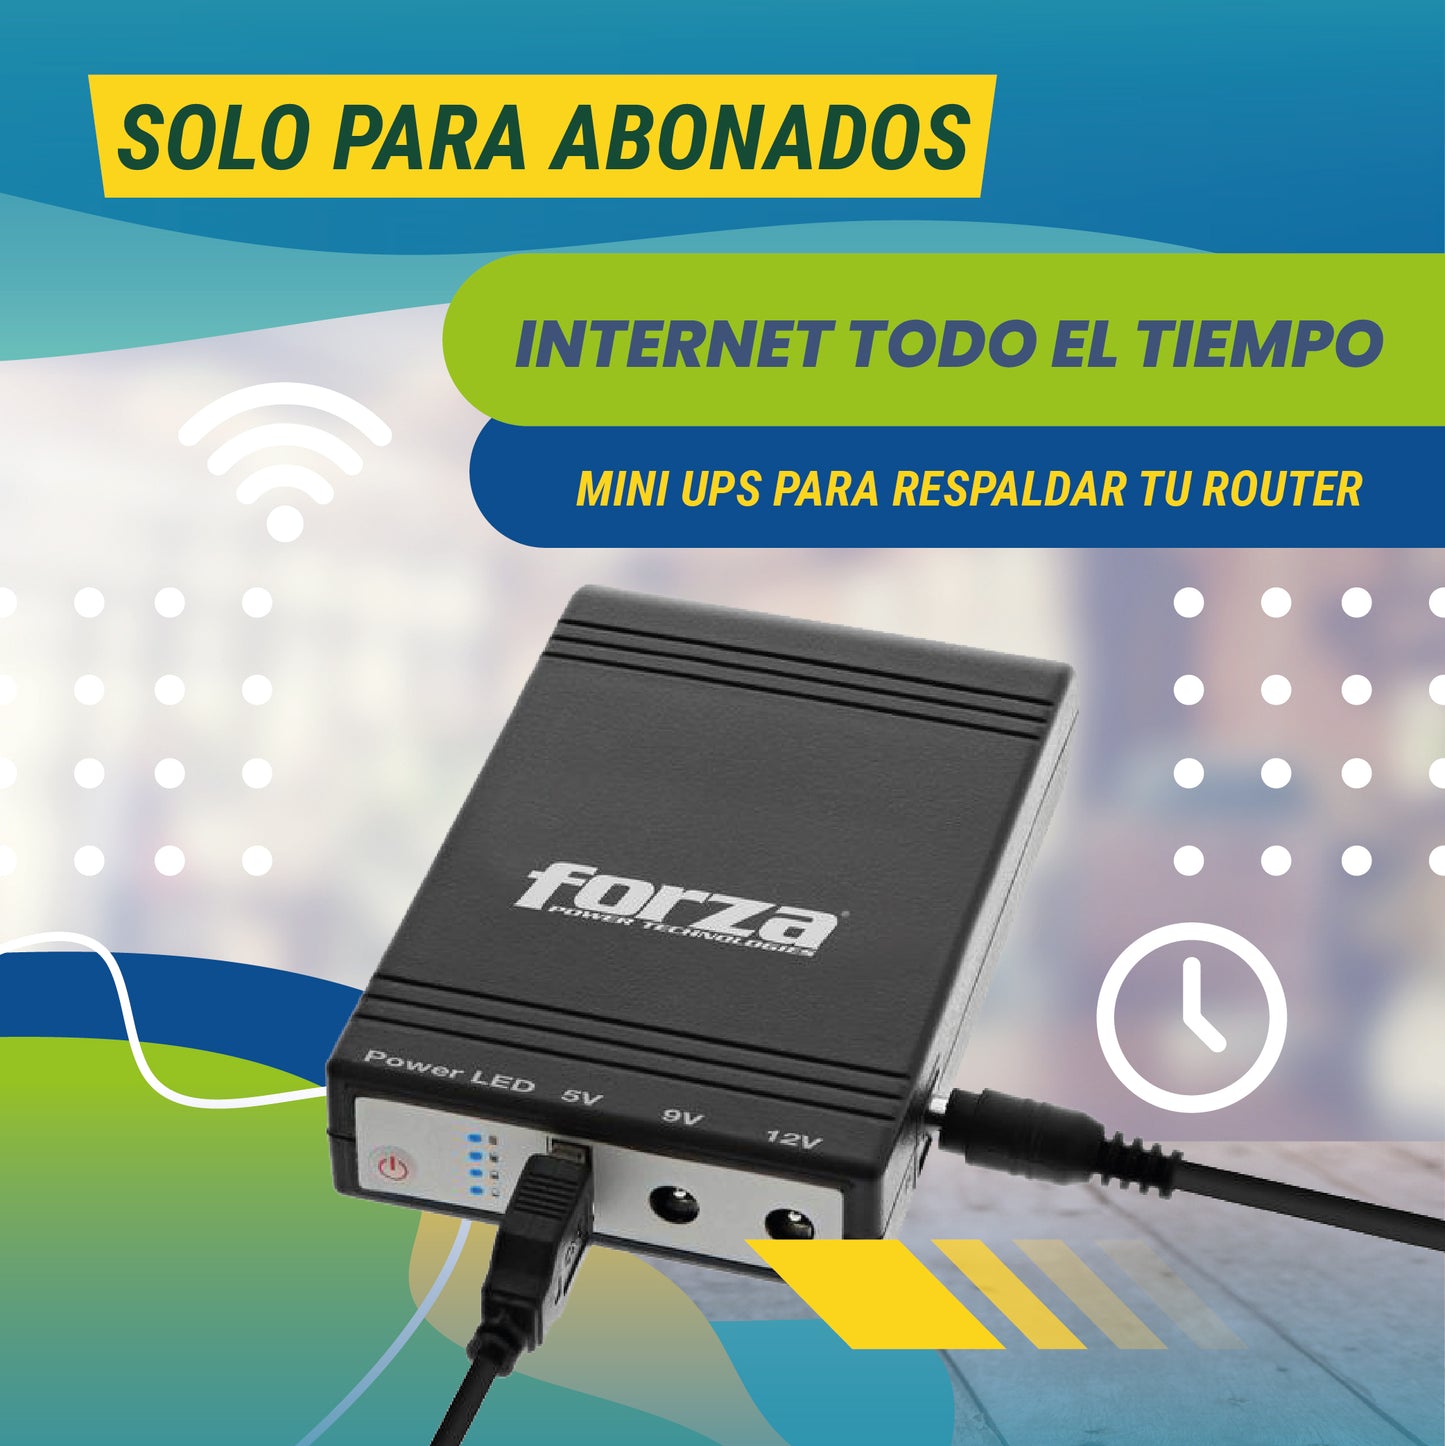 Internet Todo El Tiempo Mini UPS #SoloAbonados